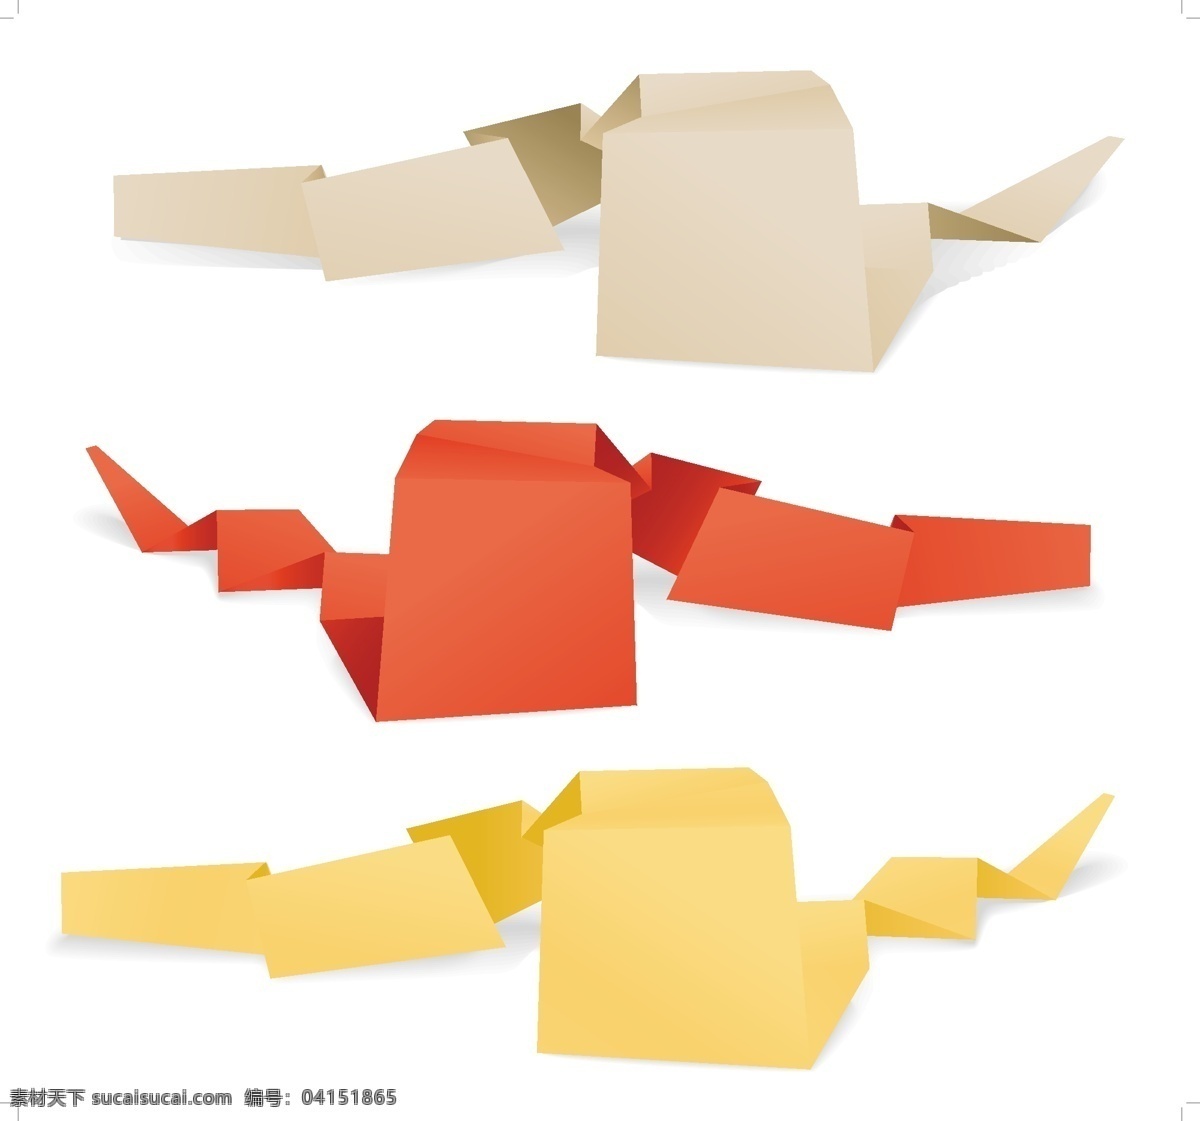 矢量 彩色 创意 折纸 形状 对话框 折纸图形 折纸形状 矢量图 其他矢量图